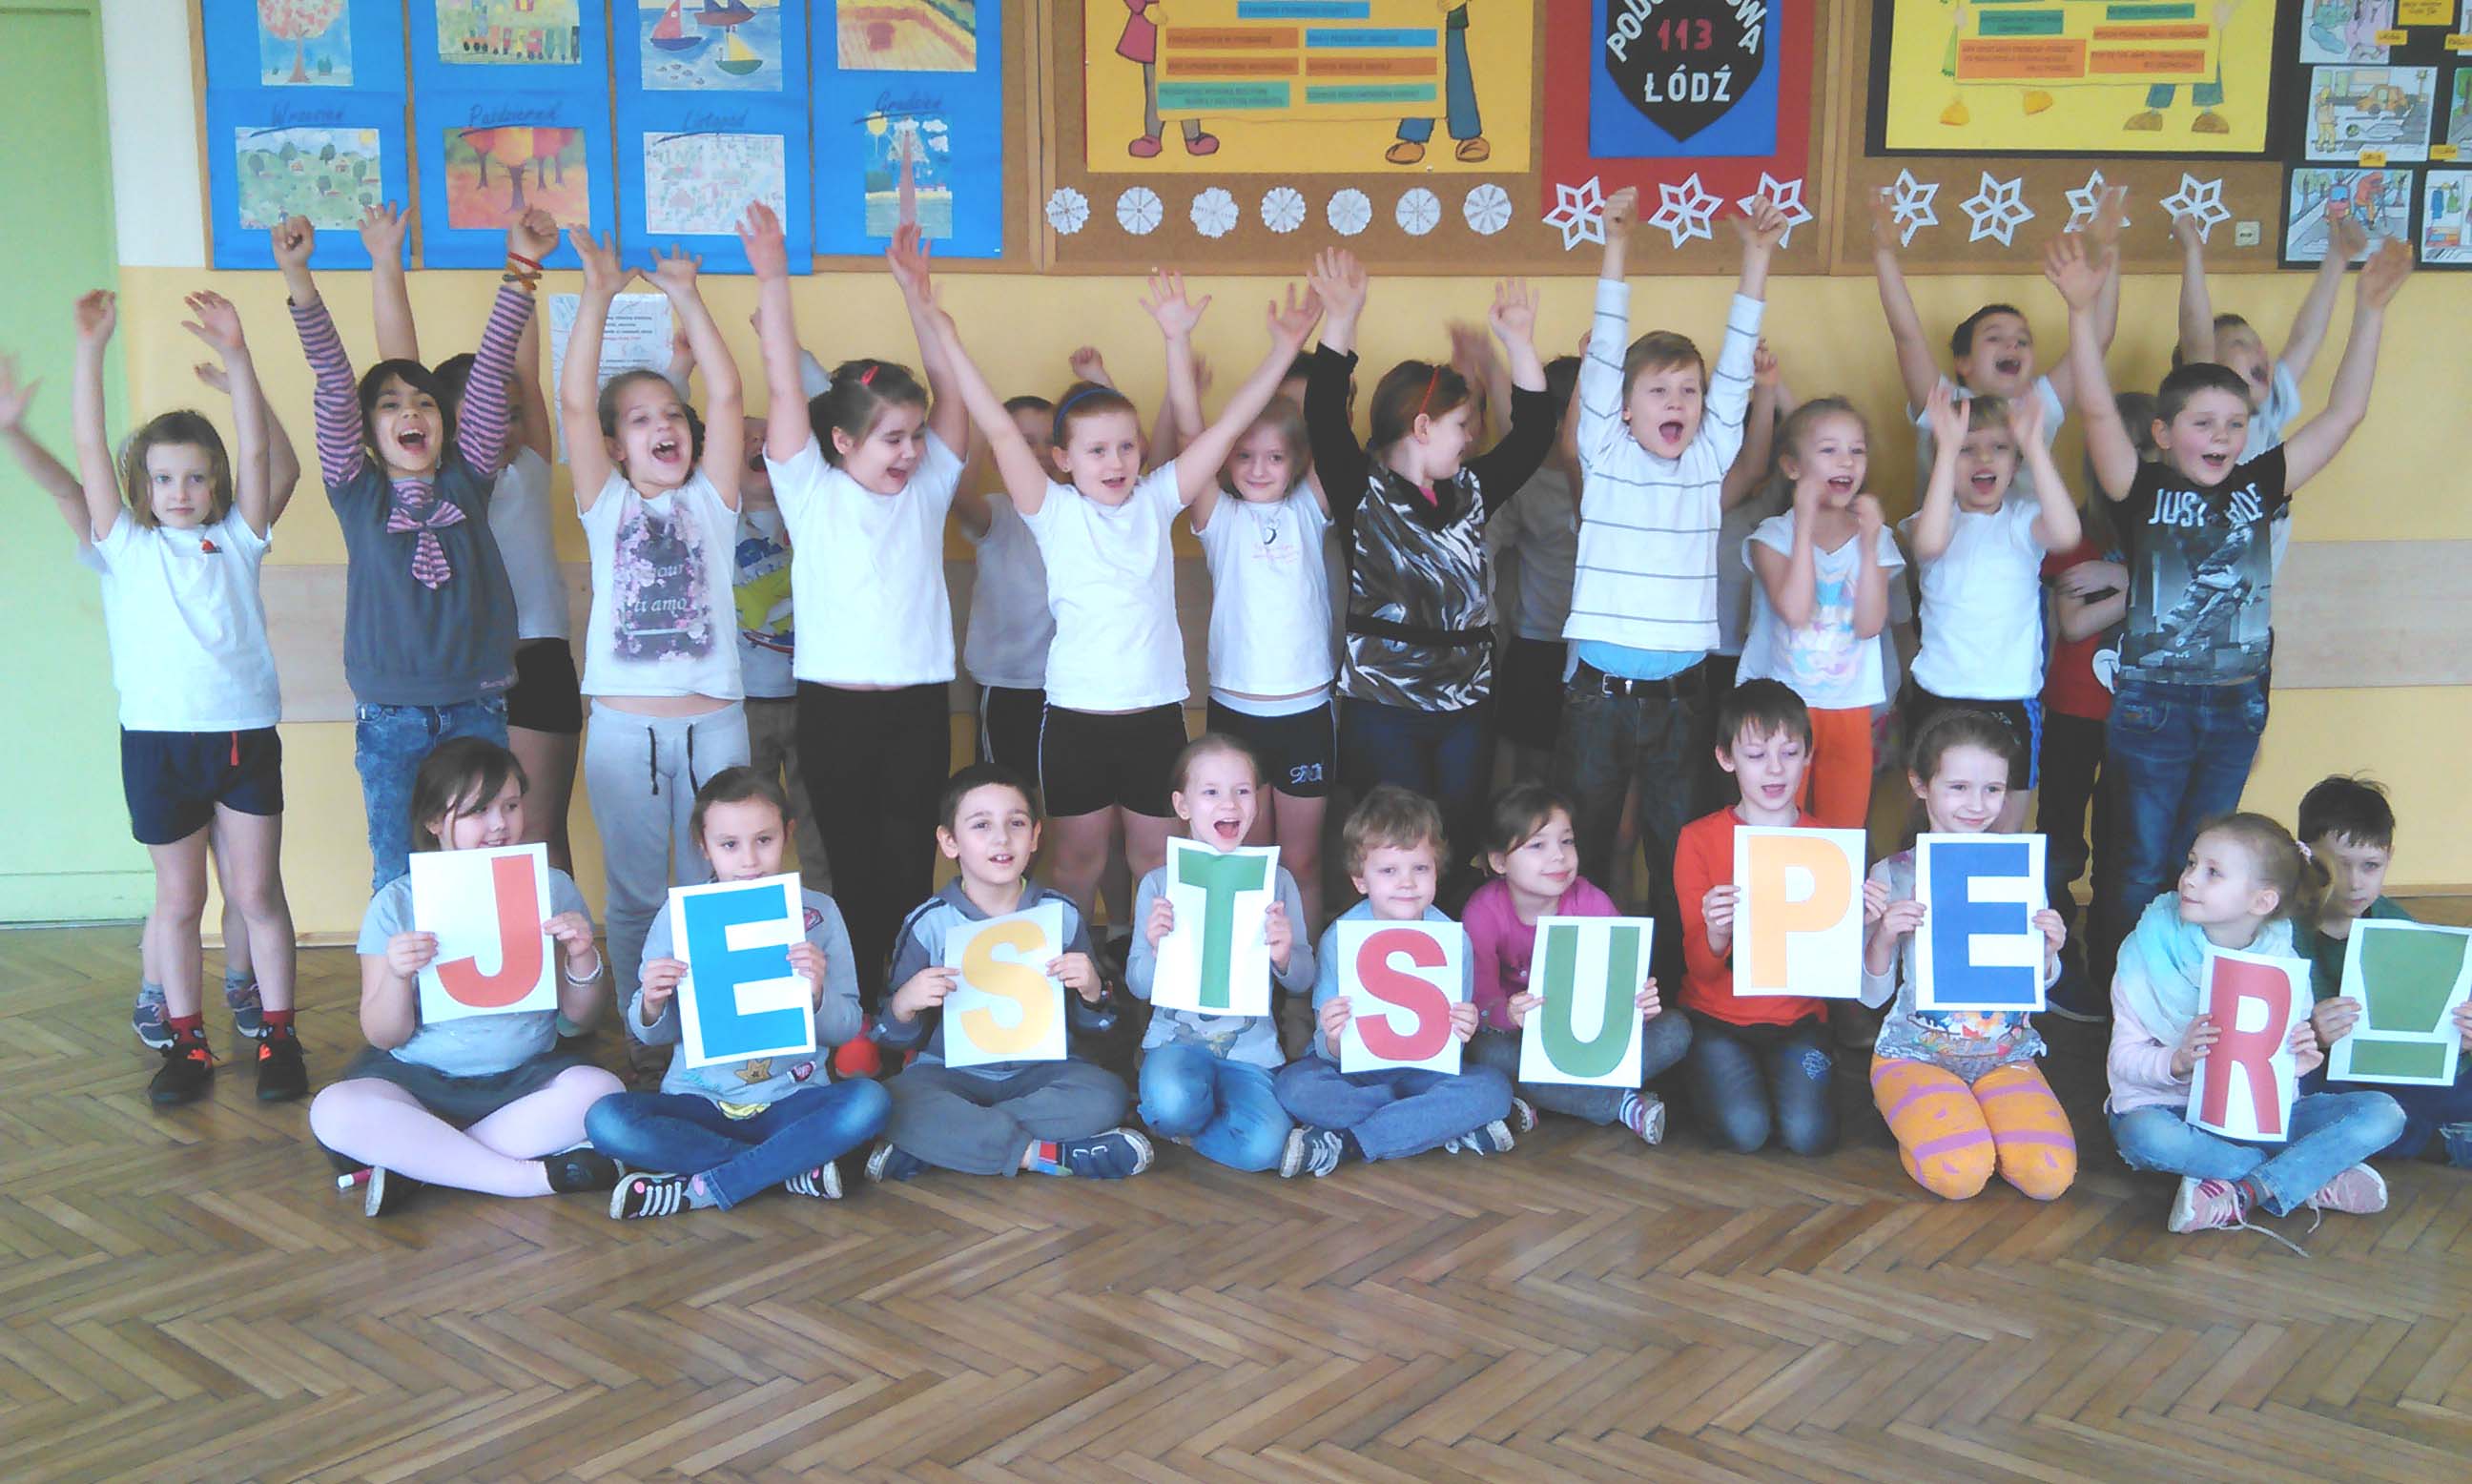 Grupa dzieci ubranych kolorowo. Stojące dzieci w tylnym rzędzie podnoszą ręce do góry. Siedzące dzieci w przednim rzędzie trzymają litery układające się w napis Jest super!